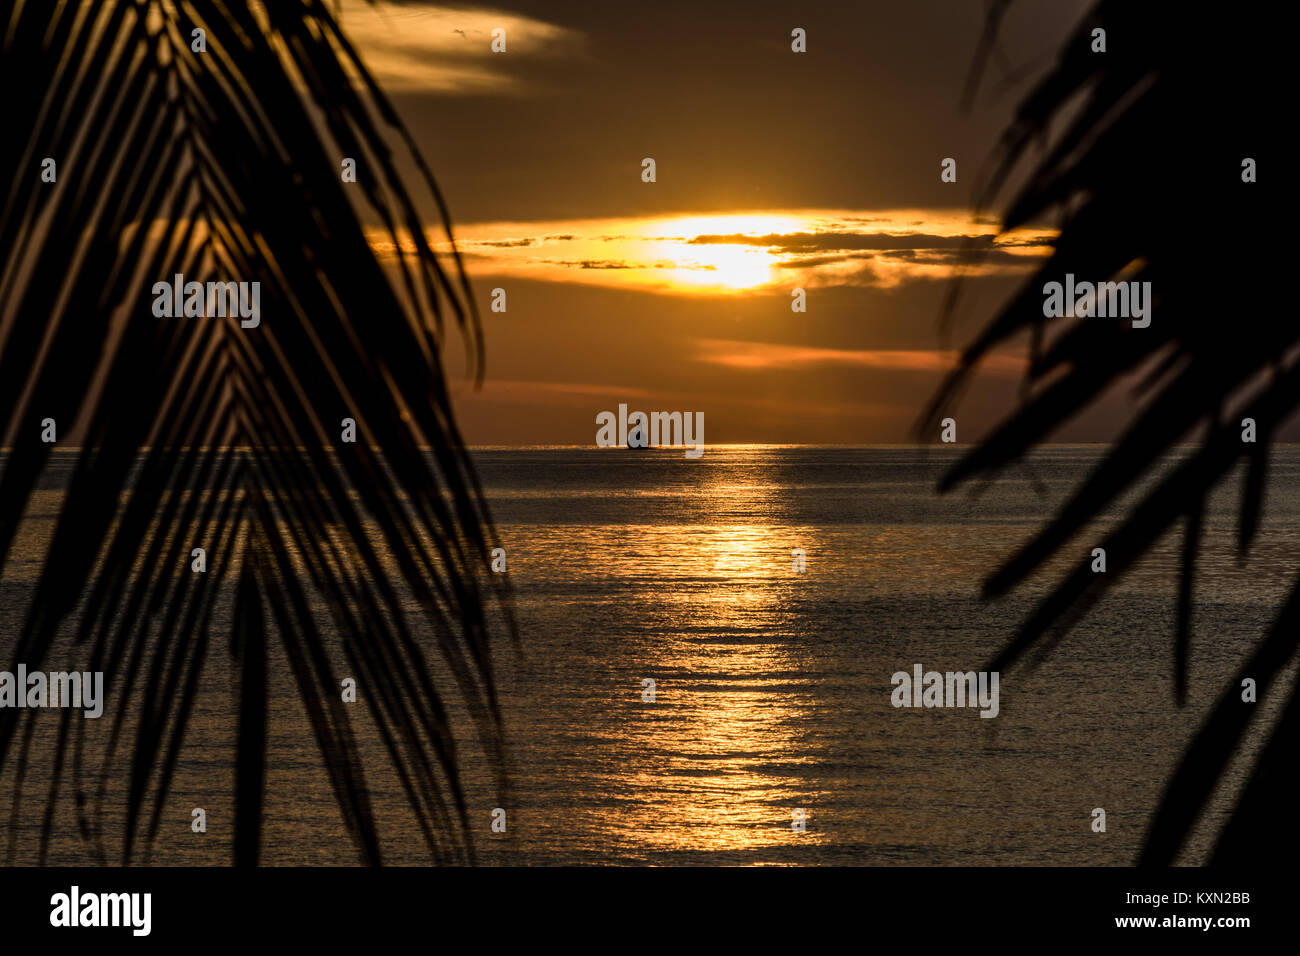 Barca da pesca all'orizzonte sul mare calmo al tramonto incorniciato da palme. Foto Stock